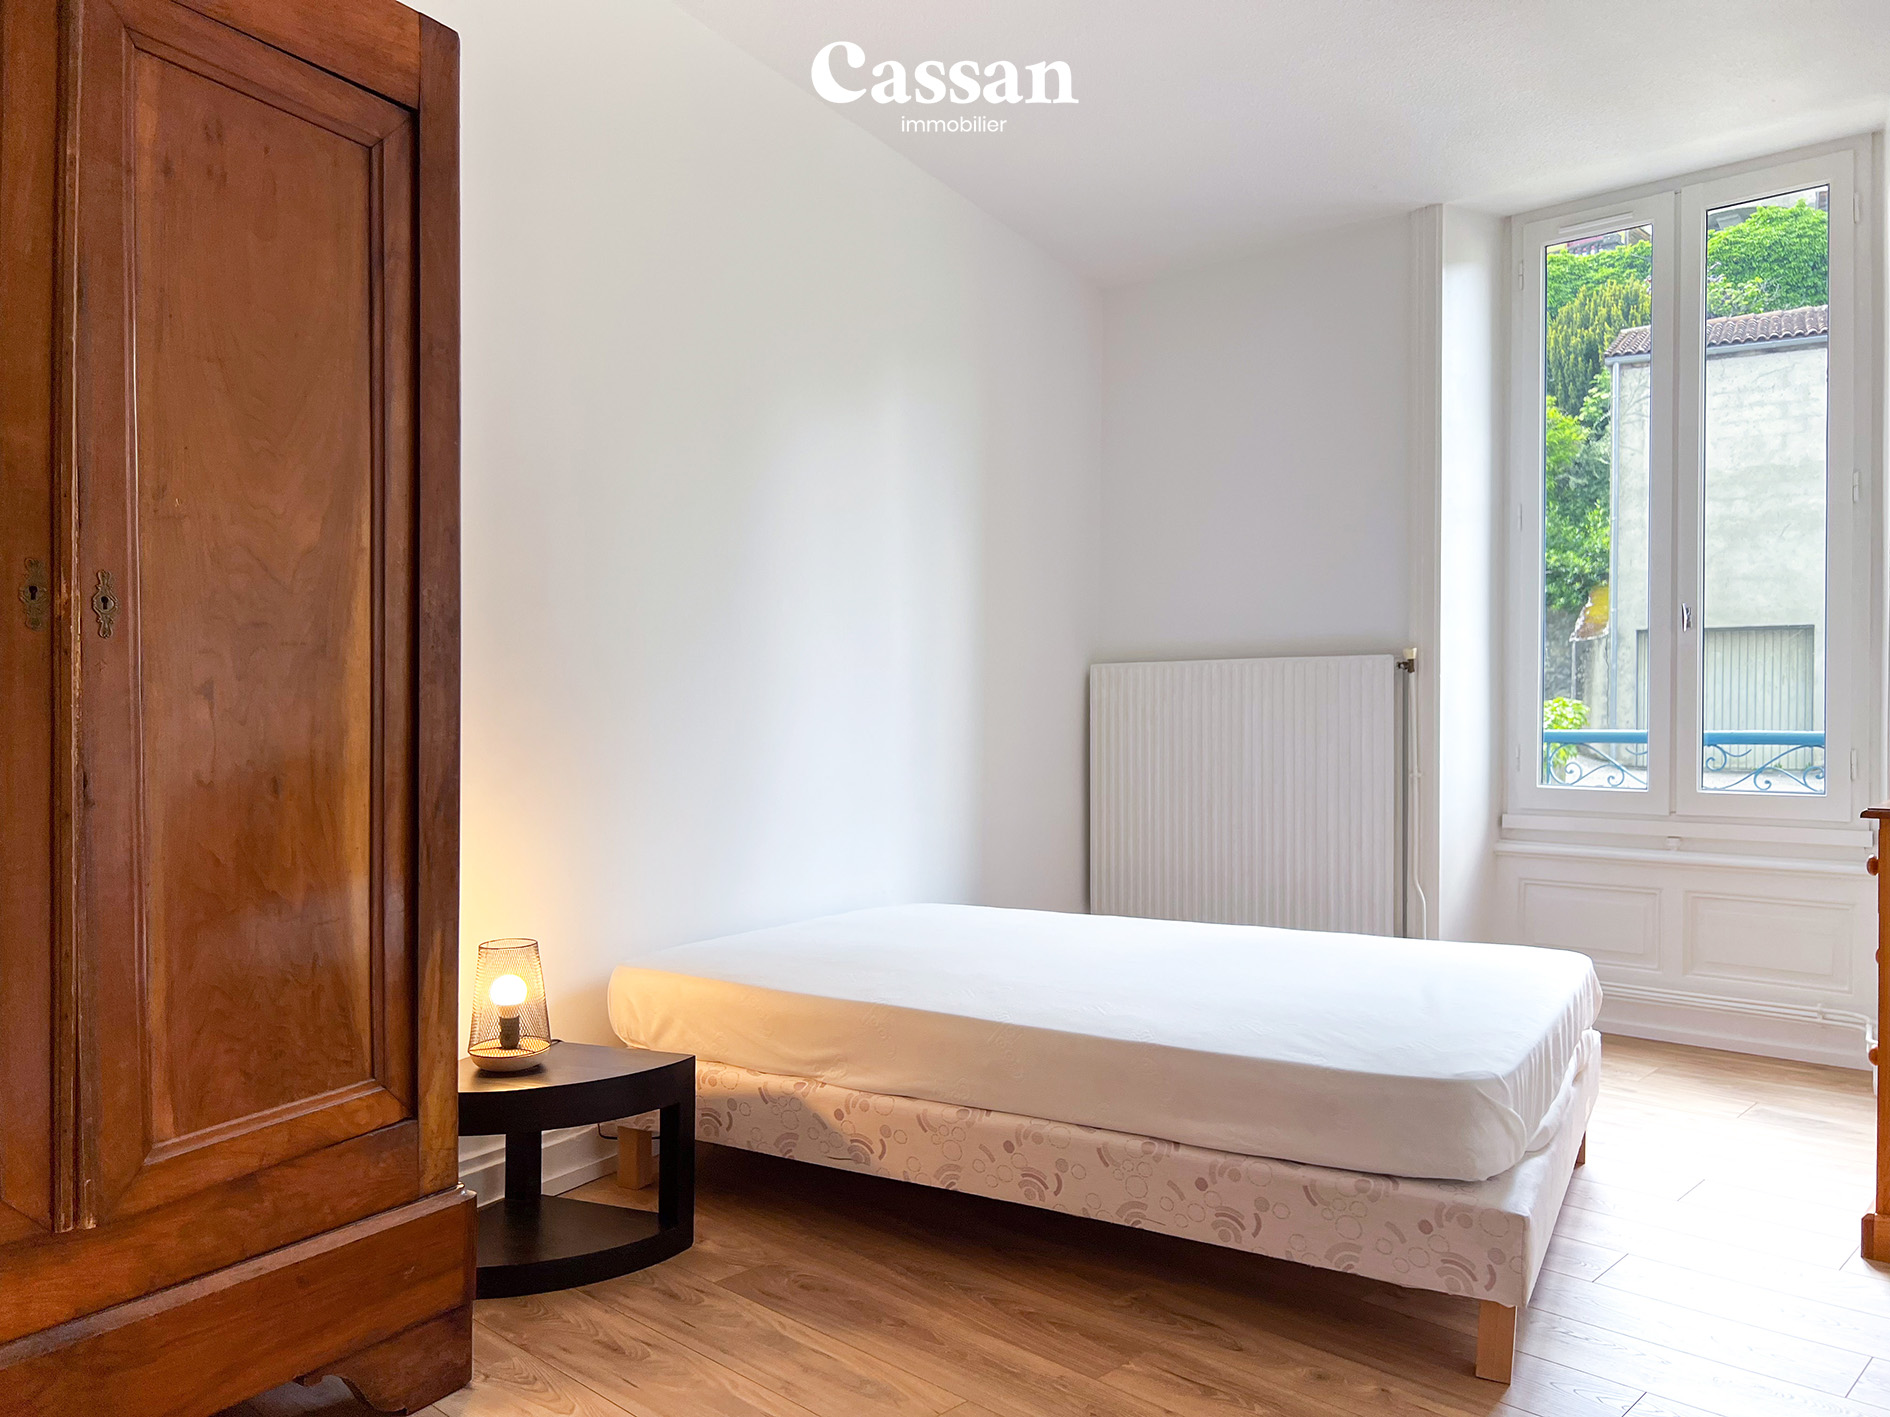 Chambre appartement à vendre Aurillac Cassan immobilier